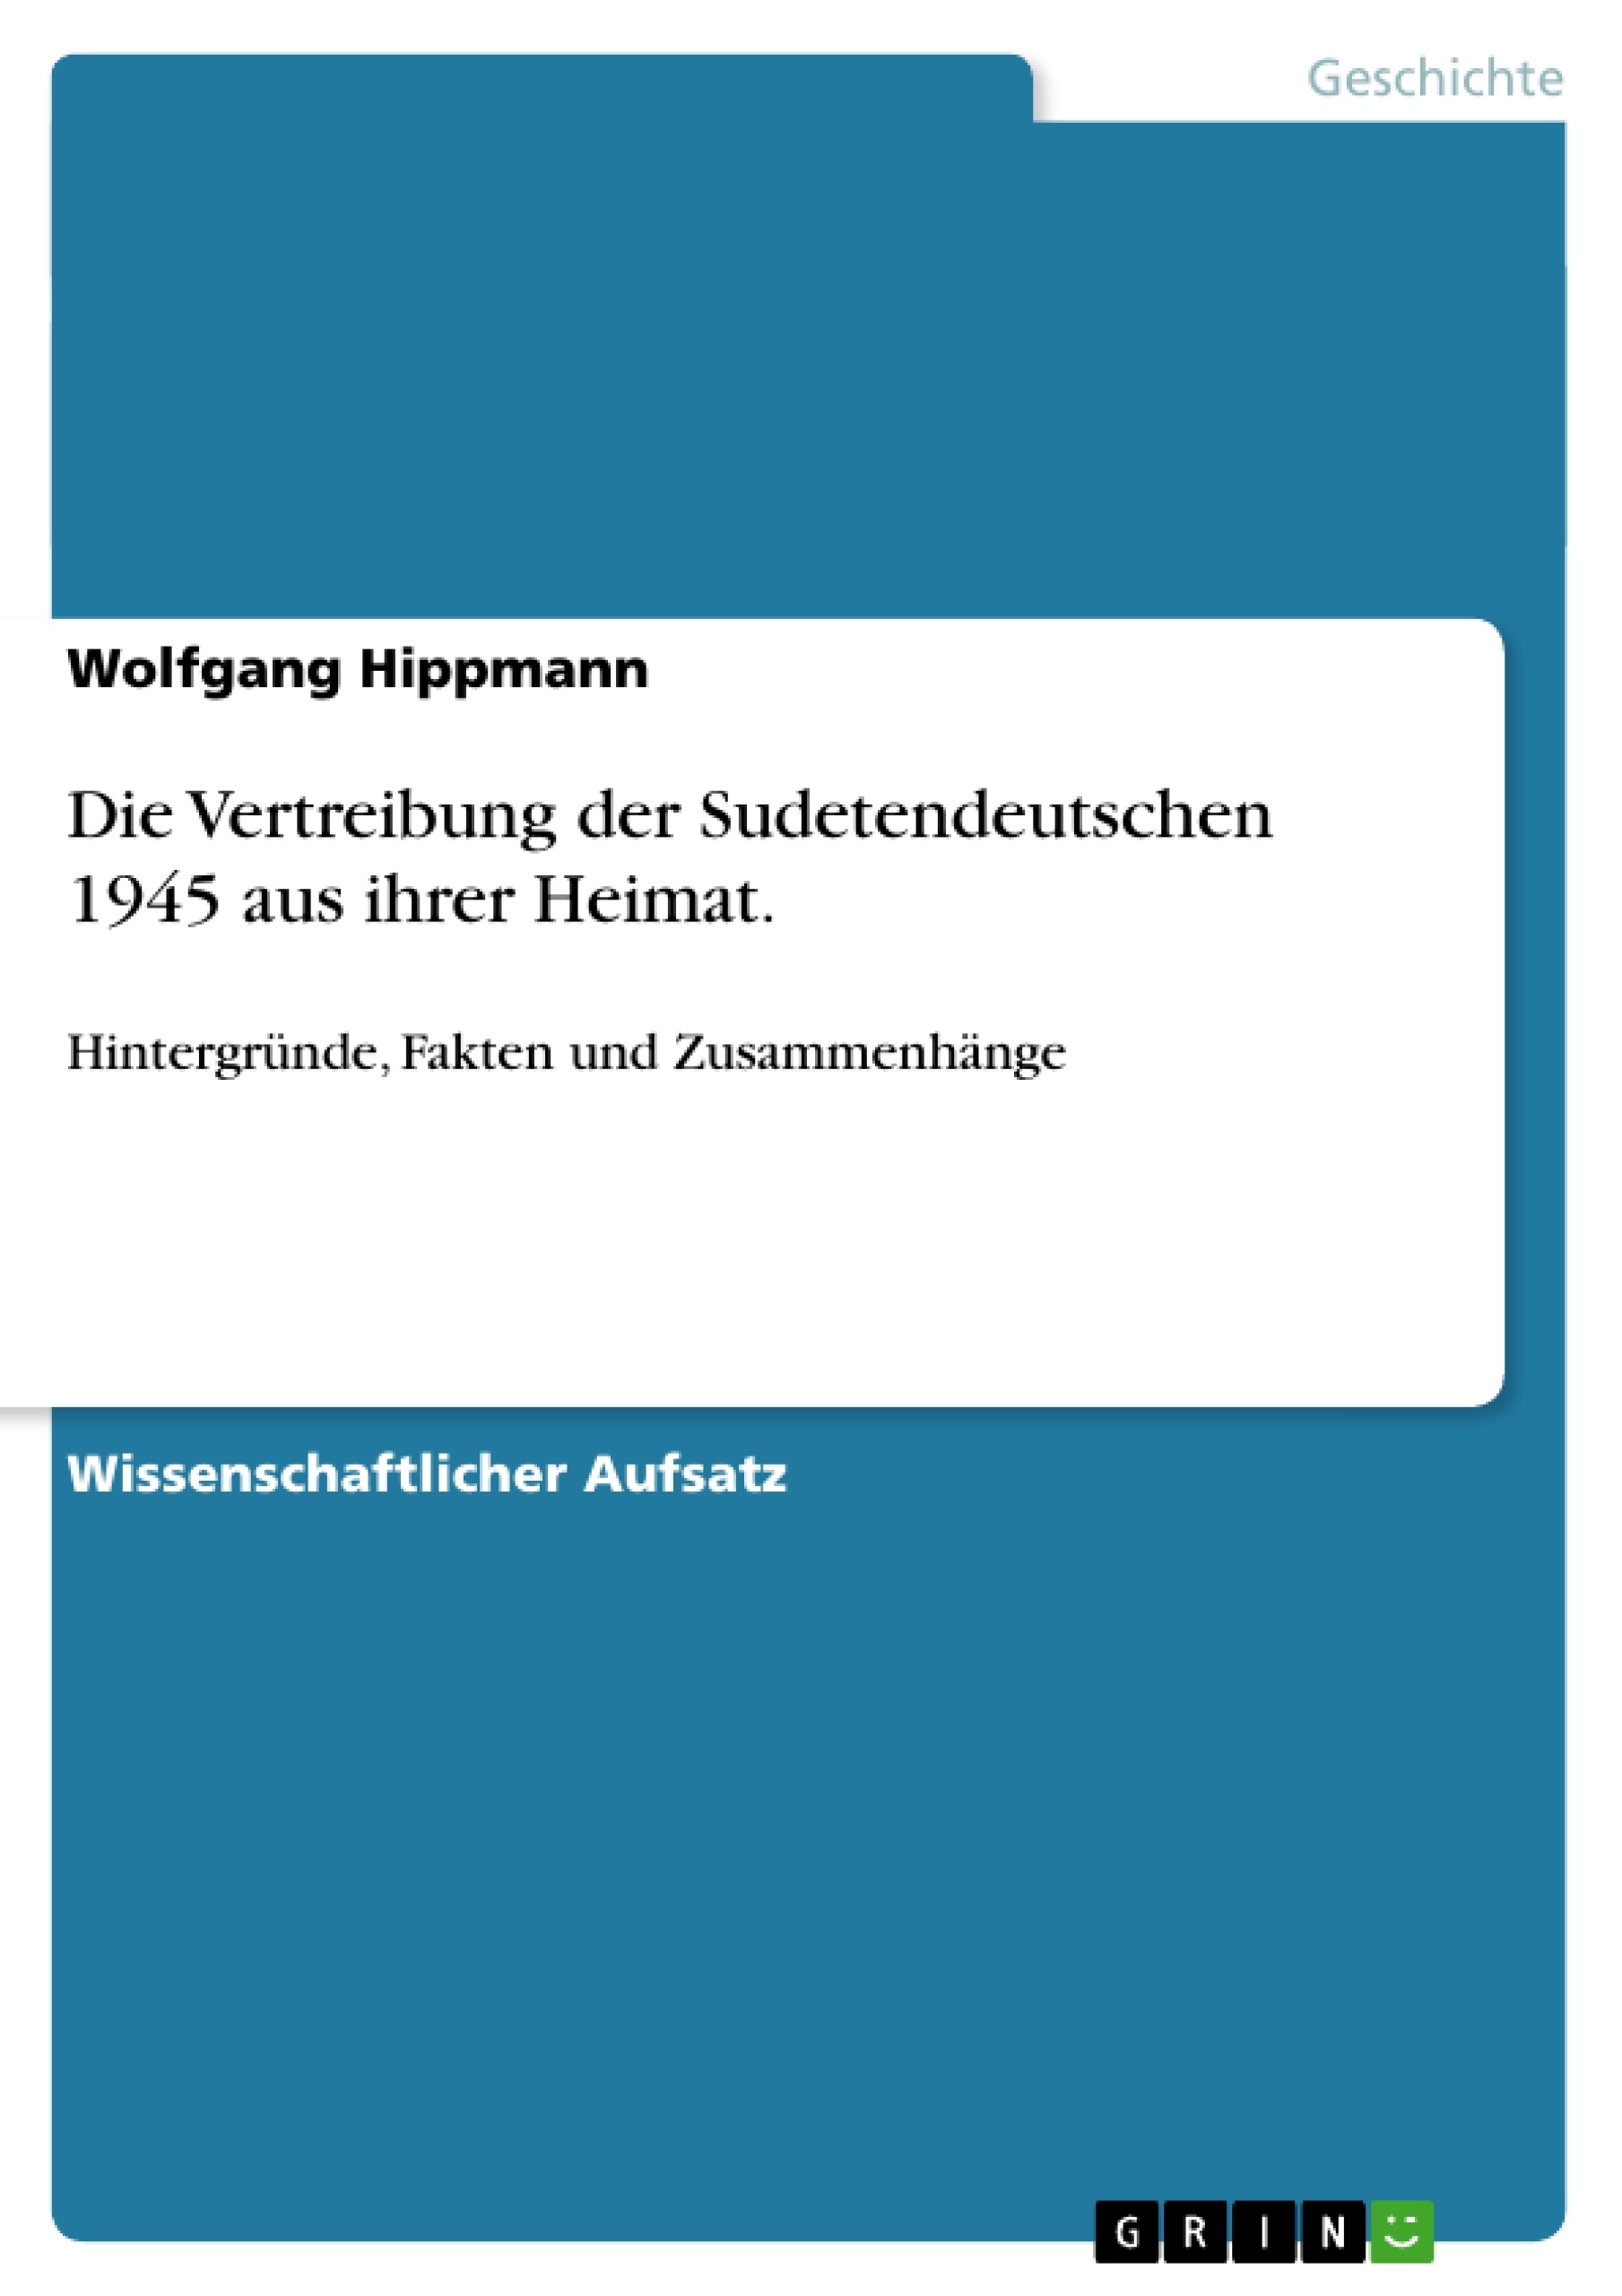 Title: Die Vertreibung der Sudetendeutschen 1945 aus ihrer Heimat.